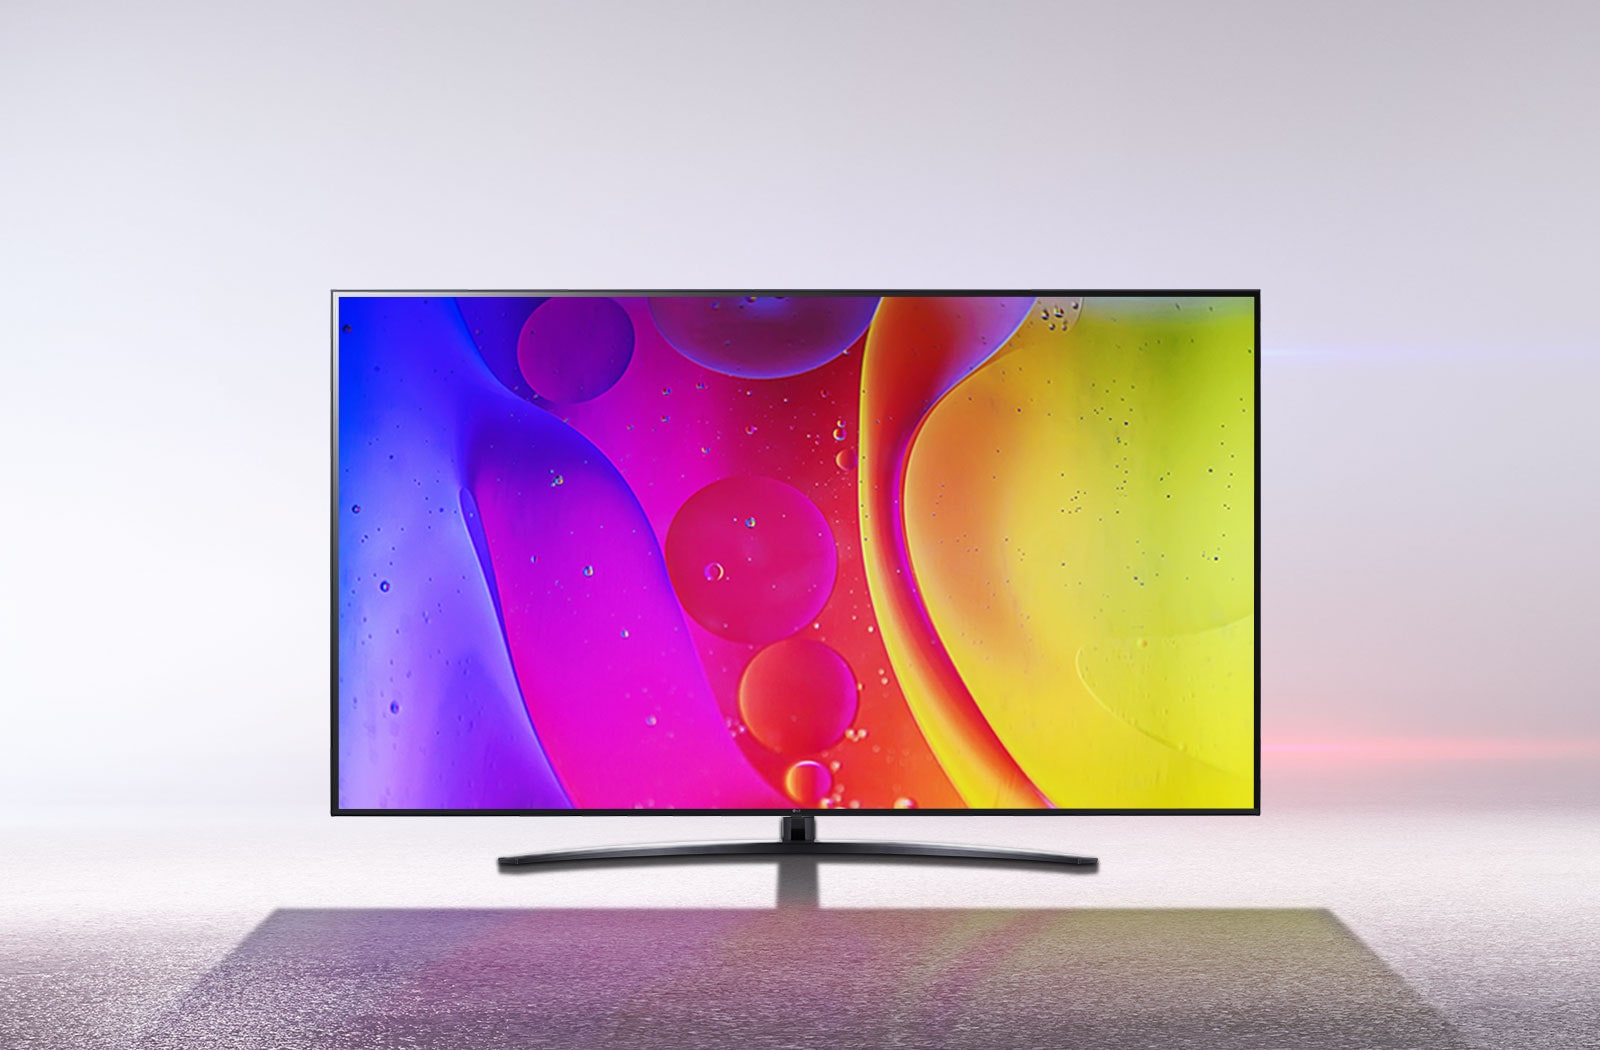 تلفزيون في غرفة بيضاء صارخة يعرض ألوانًا ساطعة ومتحركة تنويمية على الشاشة.